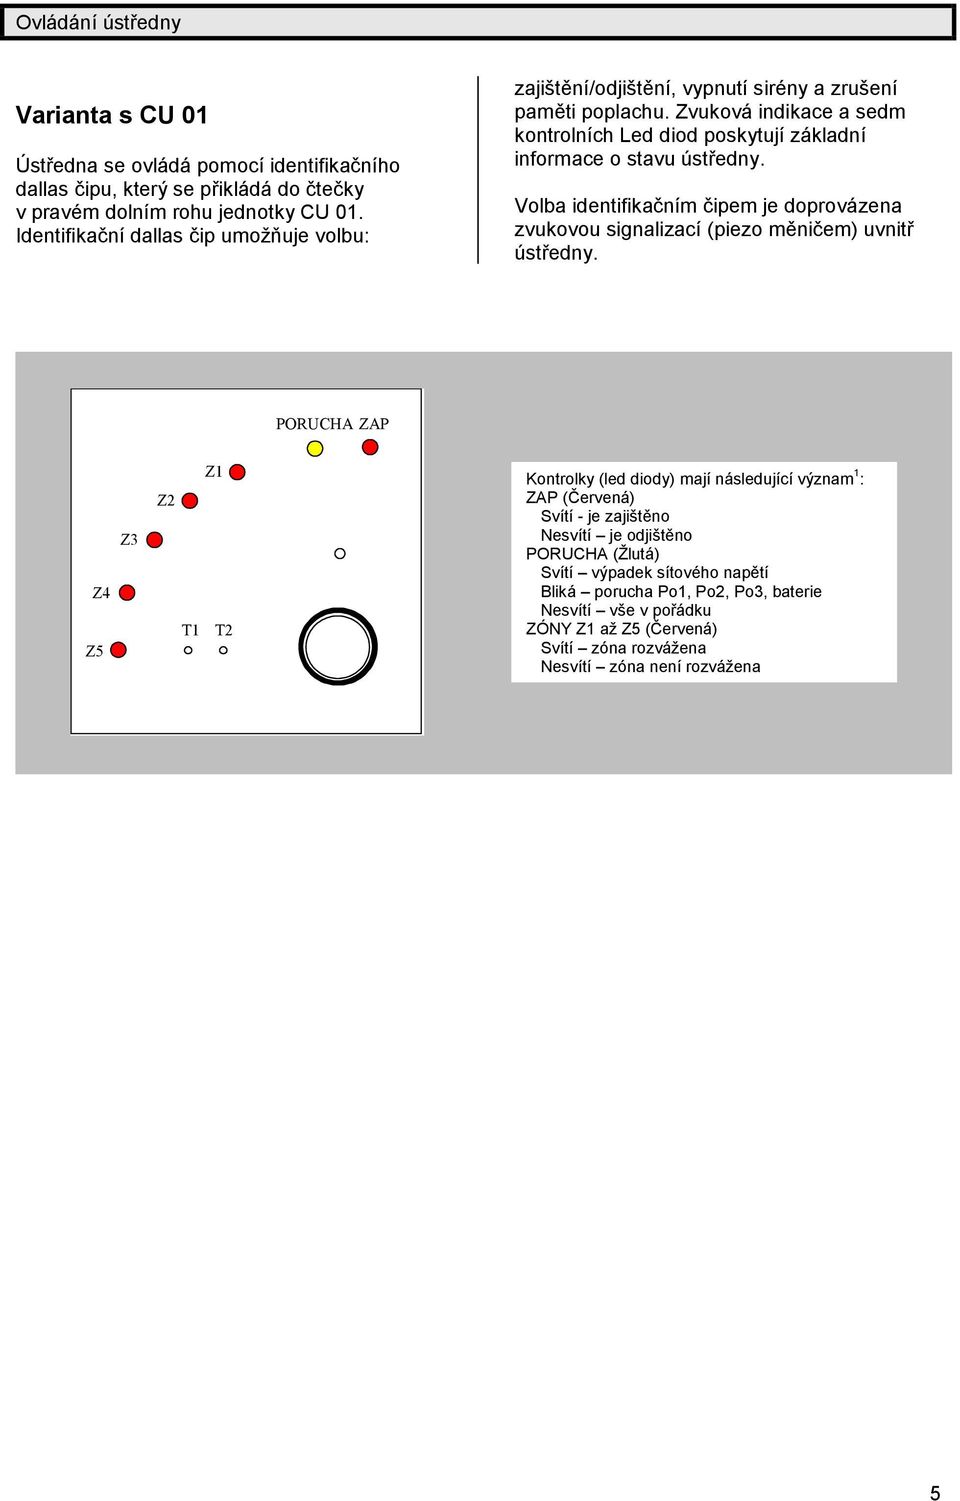 Zvuková indikace a sedm kontrolních Led diod poskytujízá kladní informace o stavu ú středny. Volba identifikačním čipem je doprová zena zvukovou signalizací(piezo měničem) uvnitř ú středny.